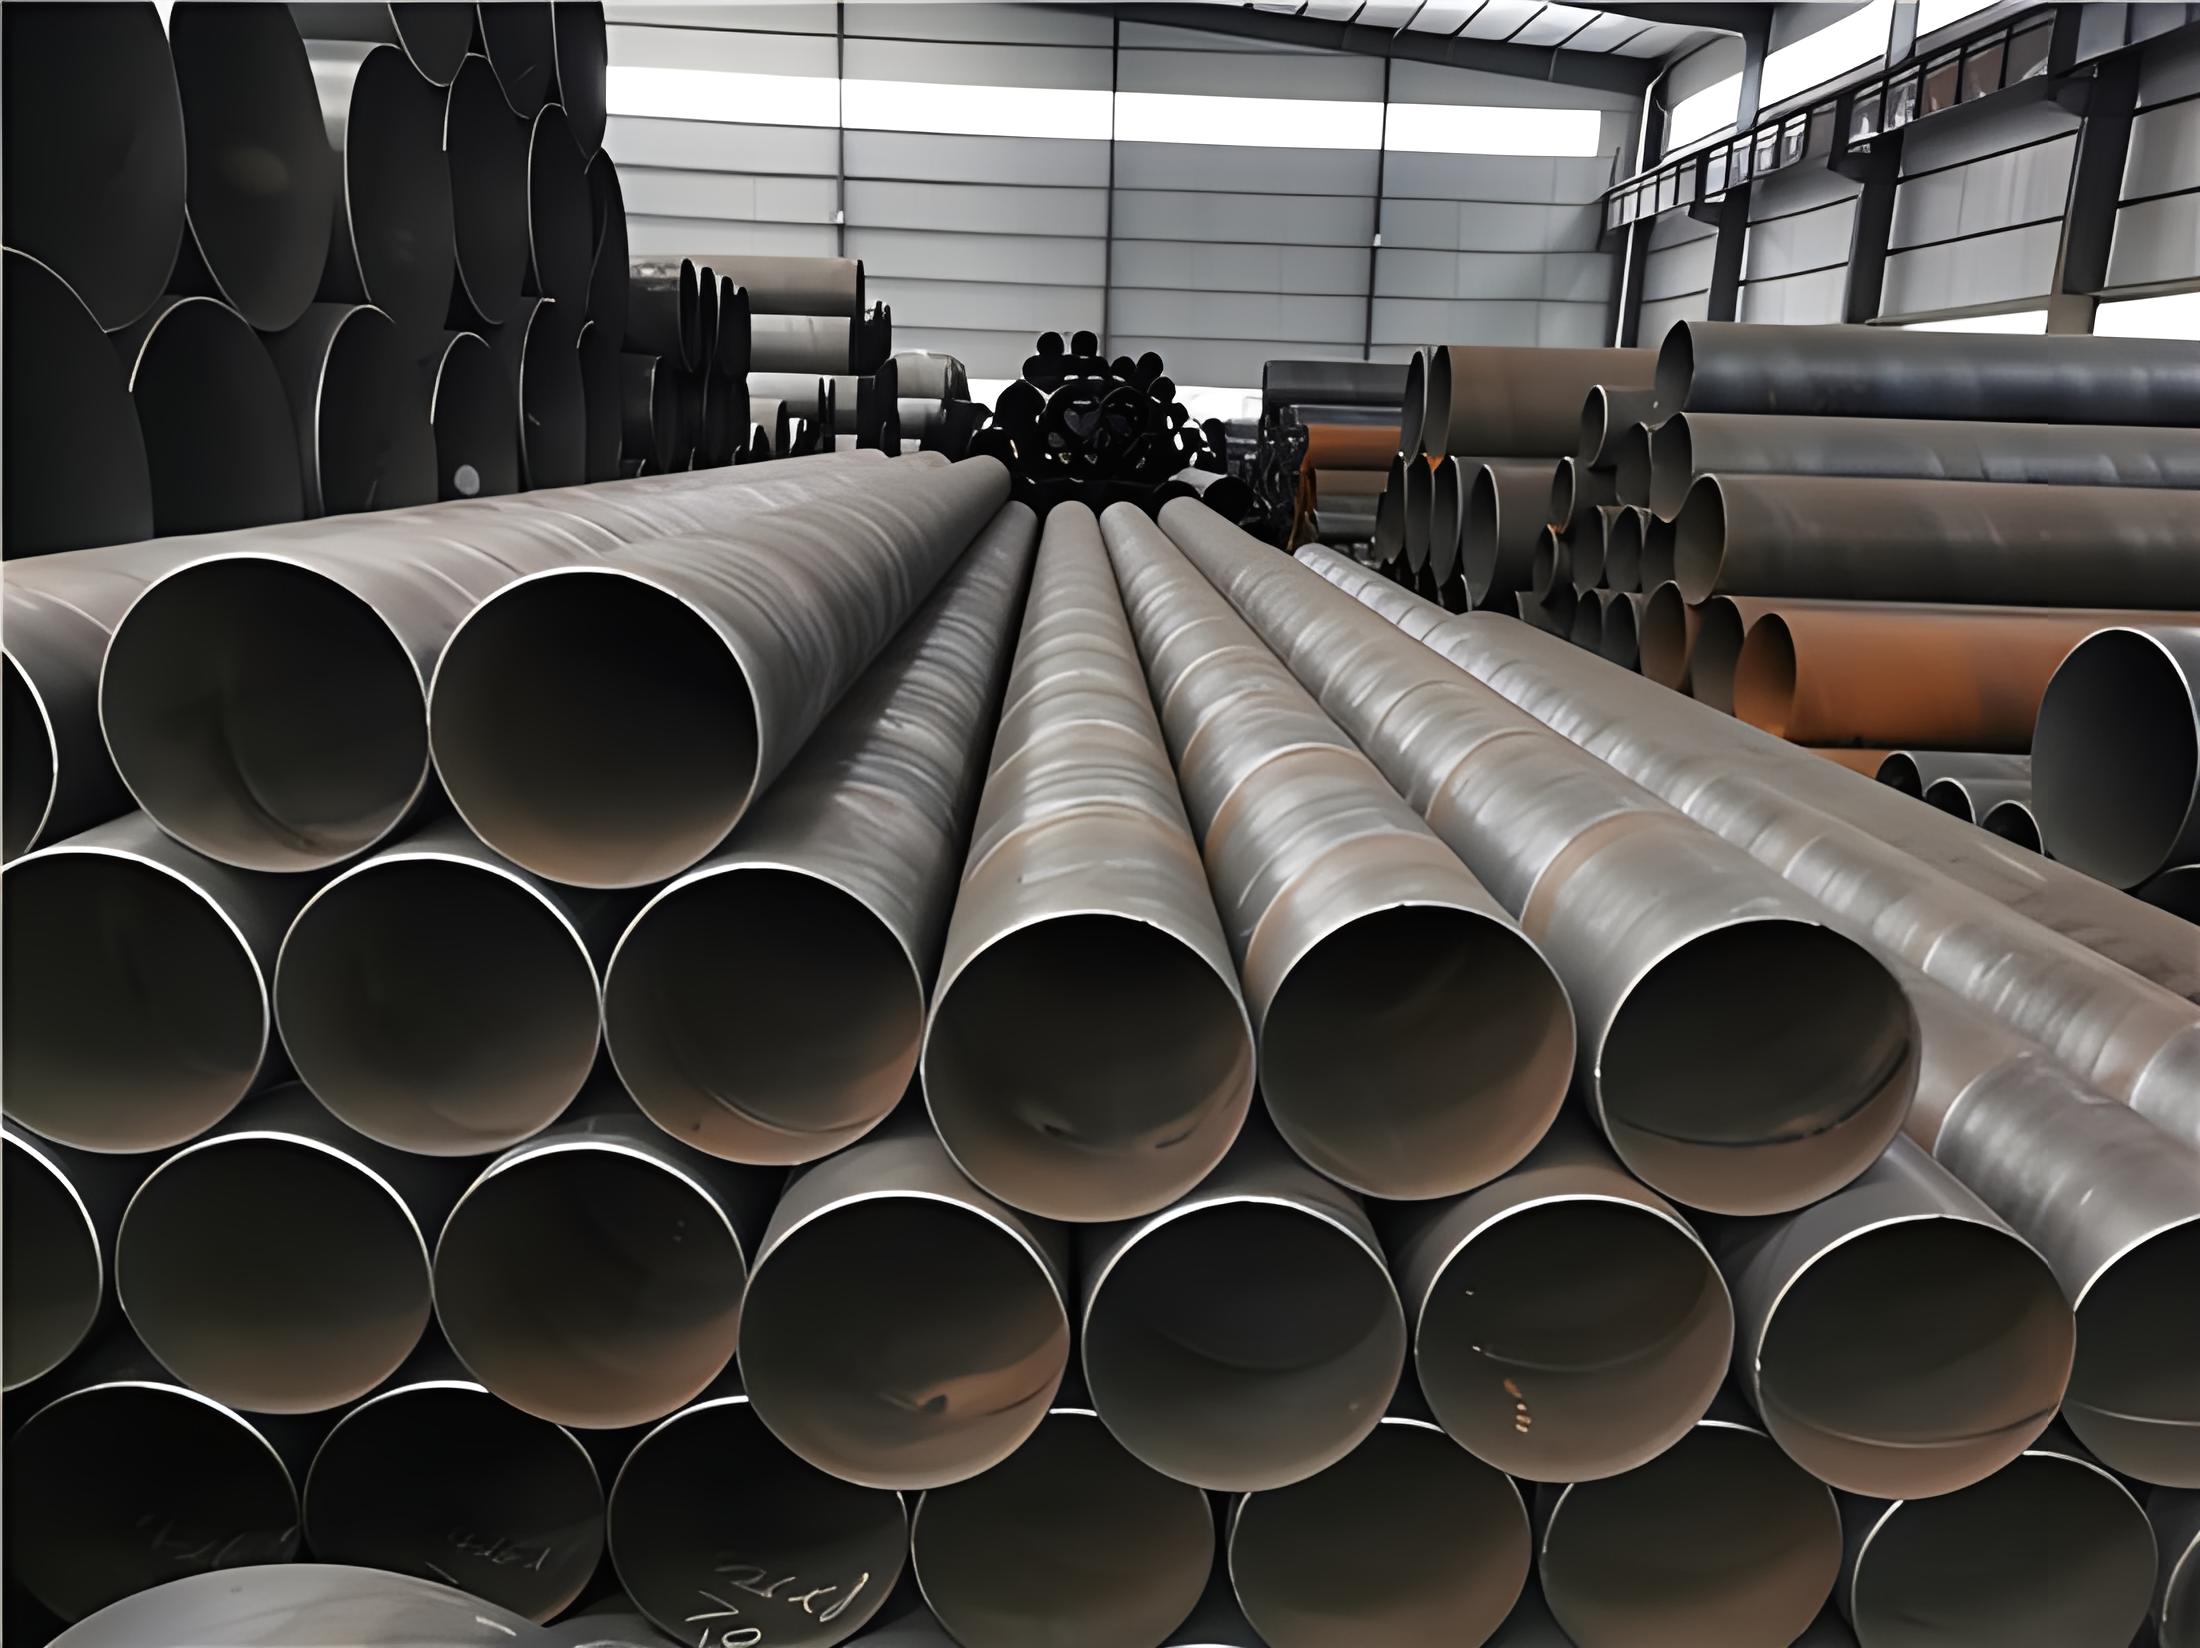 梅州螺旋钢管现代工业建设的坚实基石